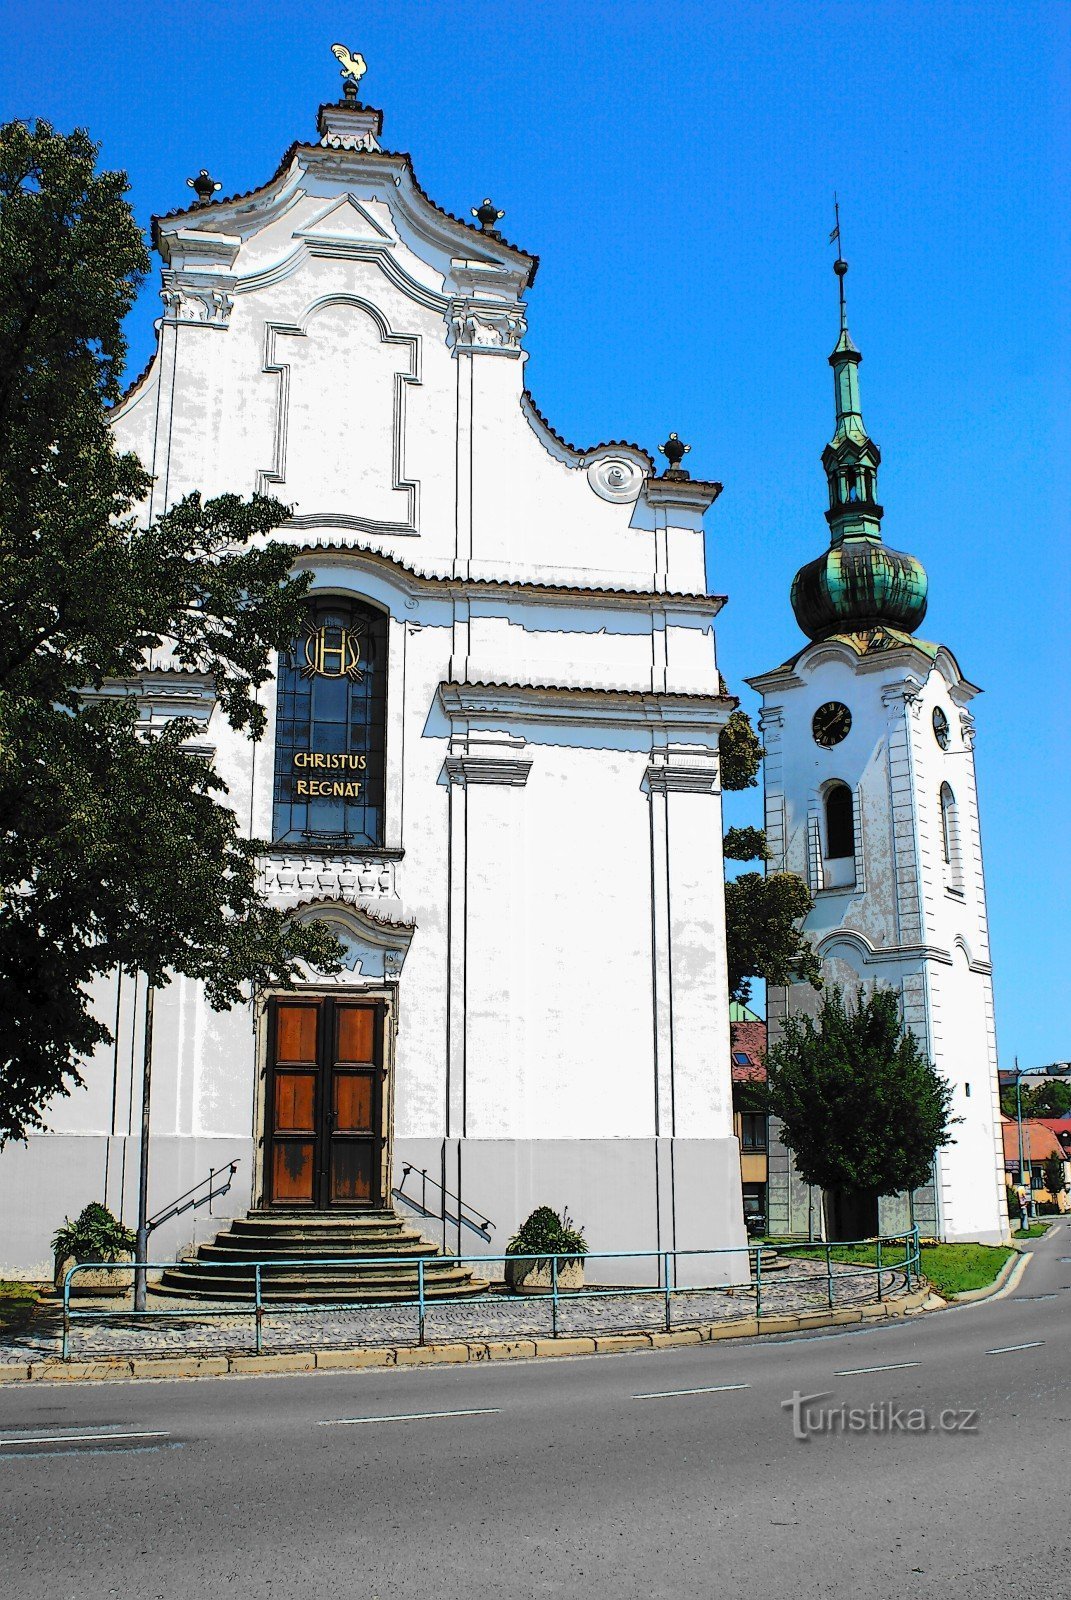 Pelhřimov - kerk van St. Welkom met belletje rinkelen